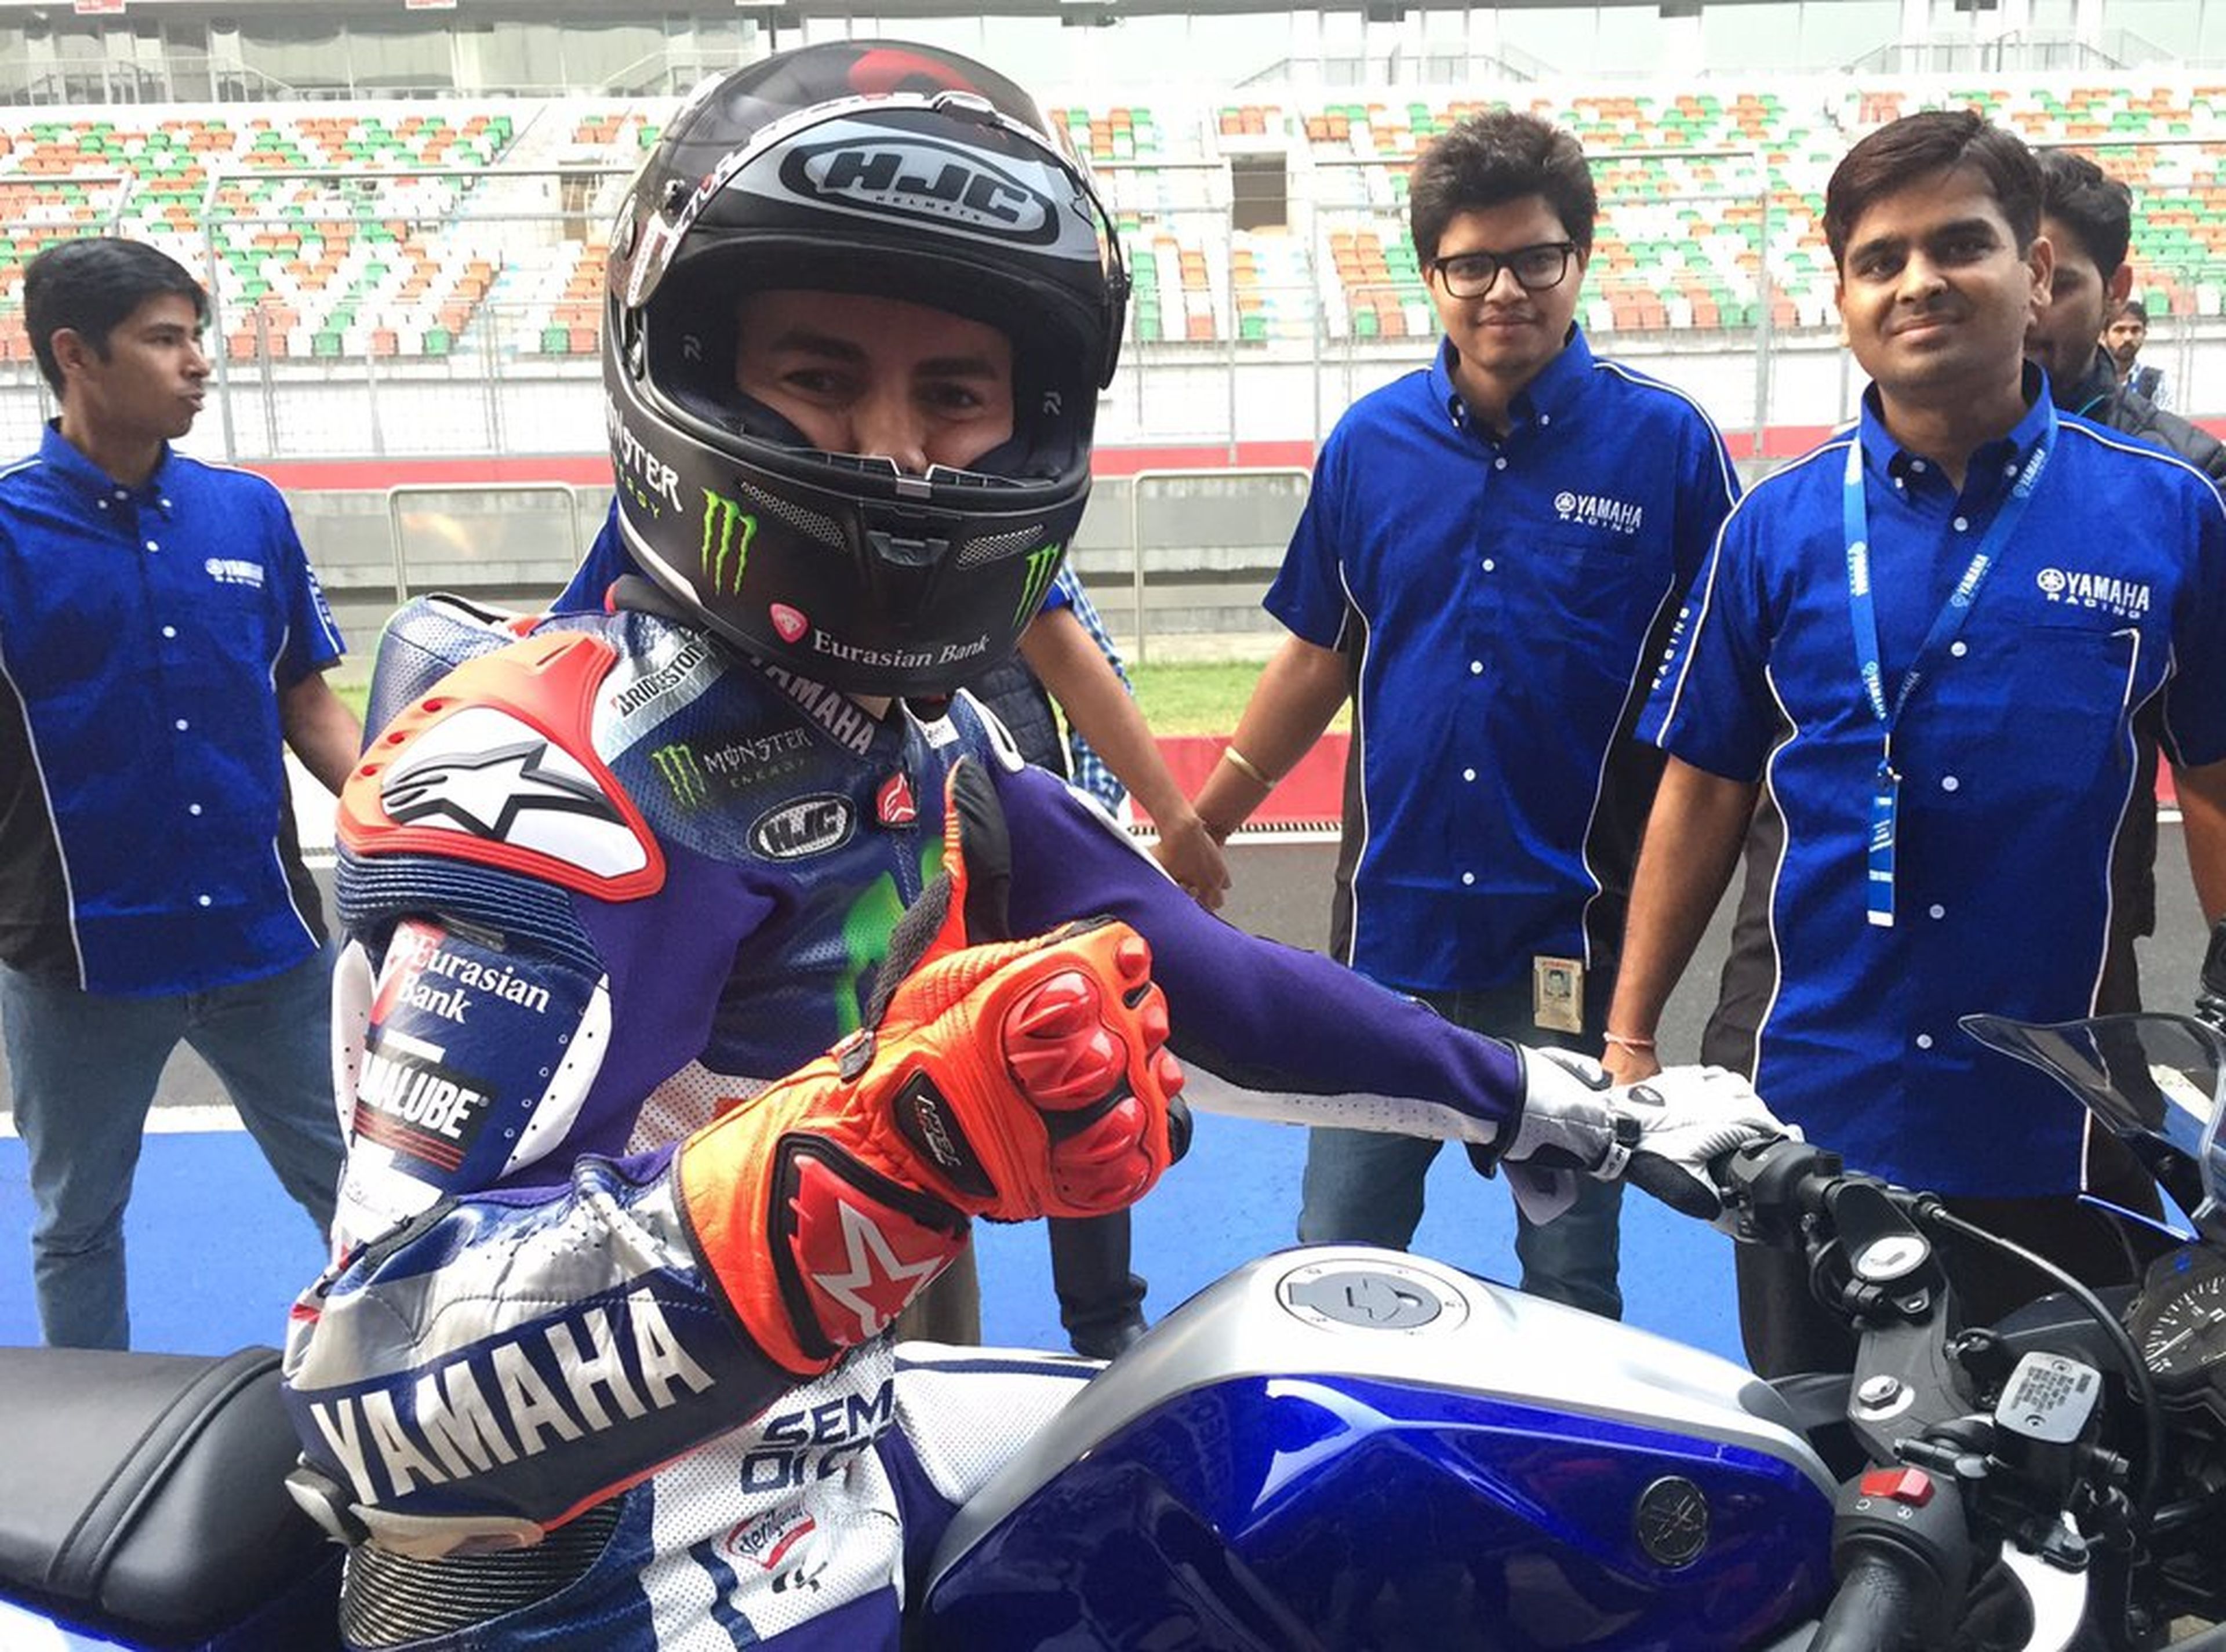 Lorenzo prueba la Yamaha R3, la deportiva para el carné A2